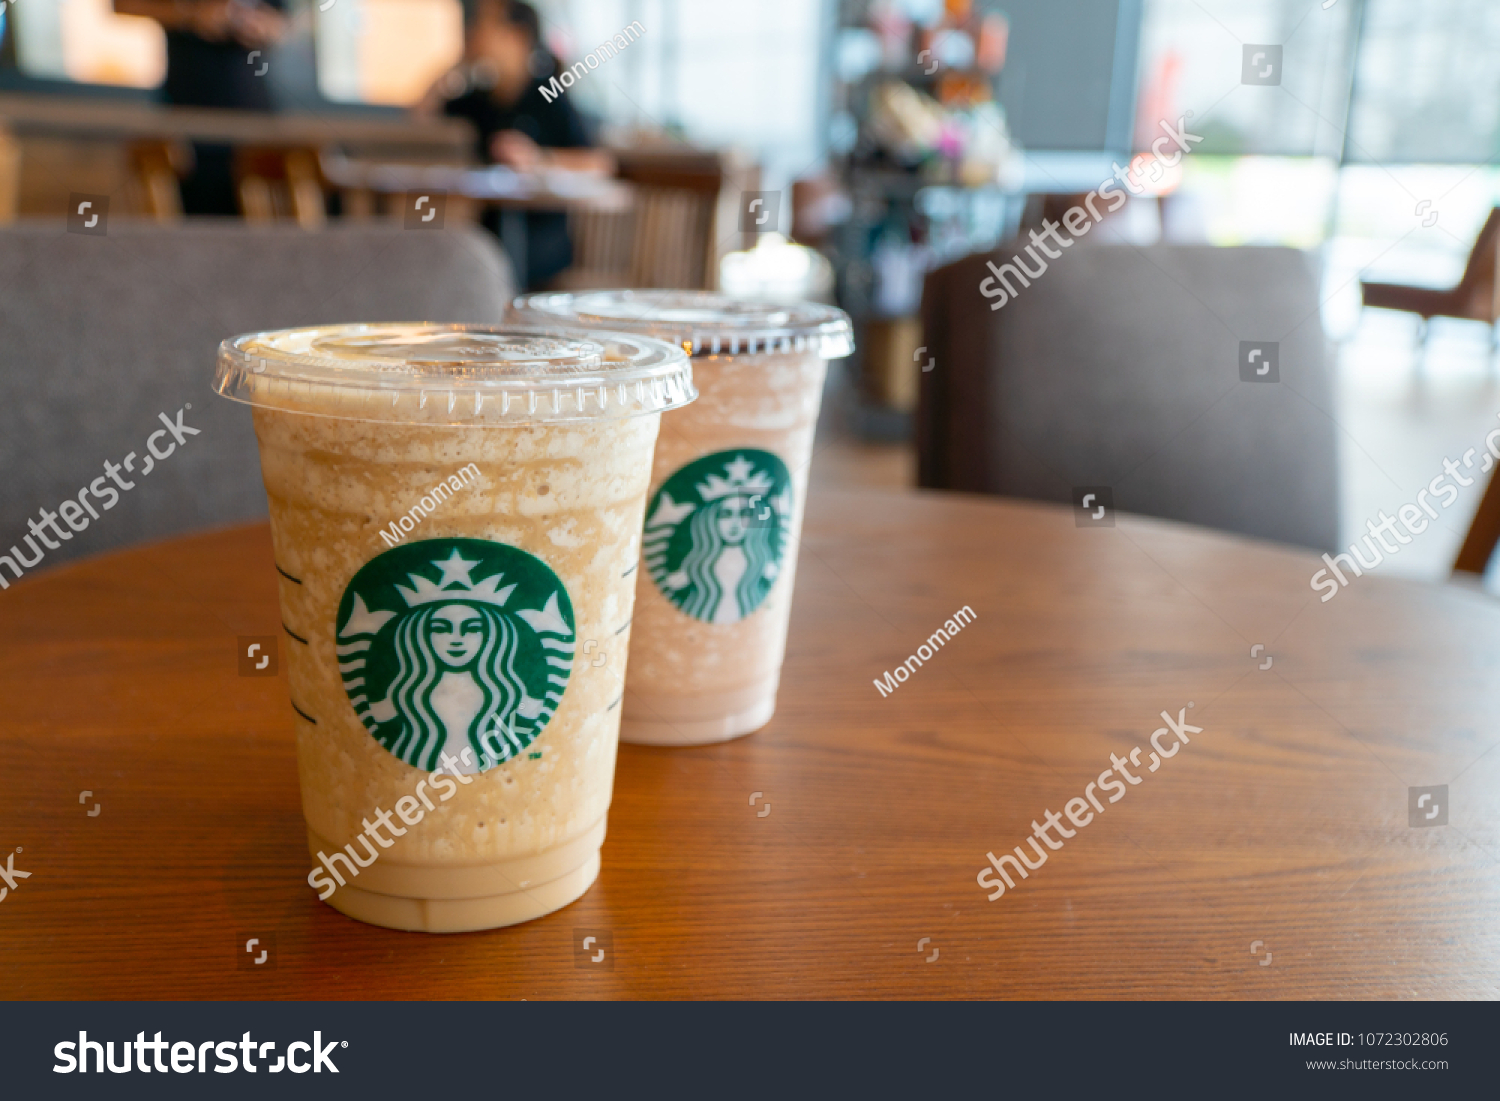 Starbucks cocoa cappuccino The Starbucks